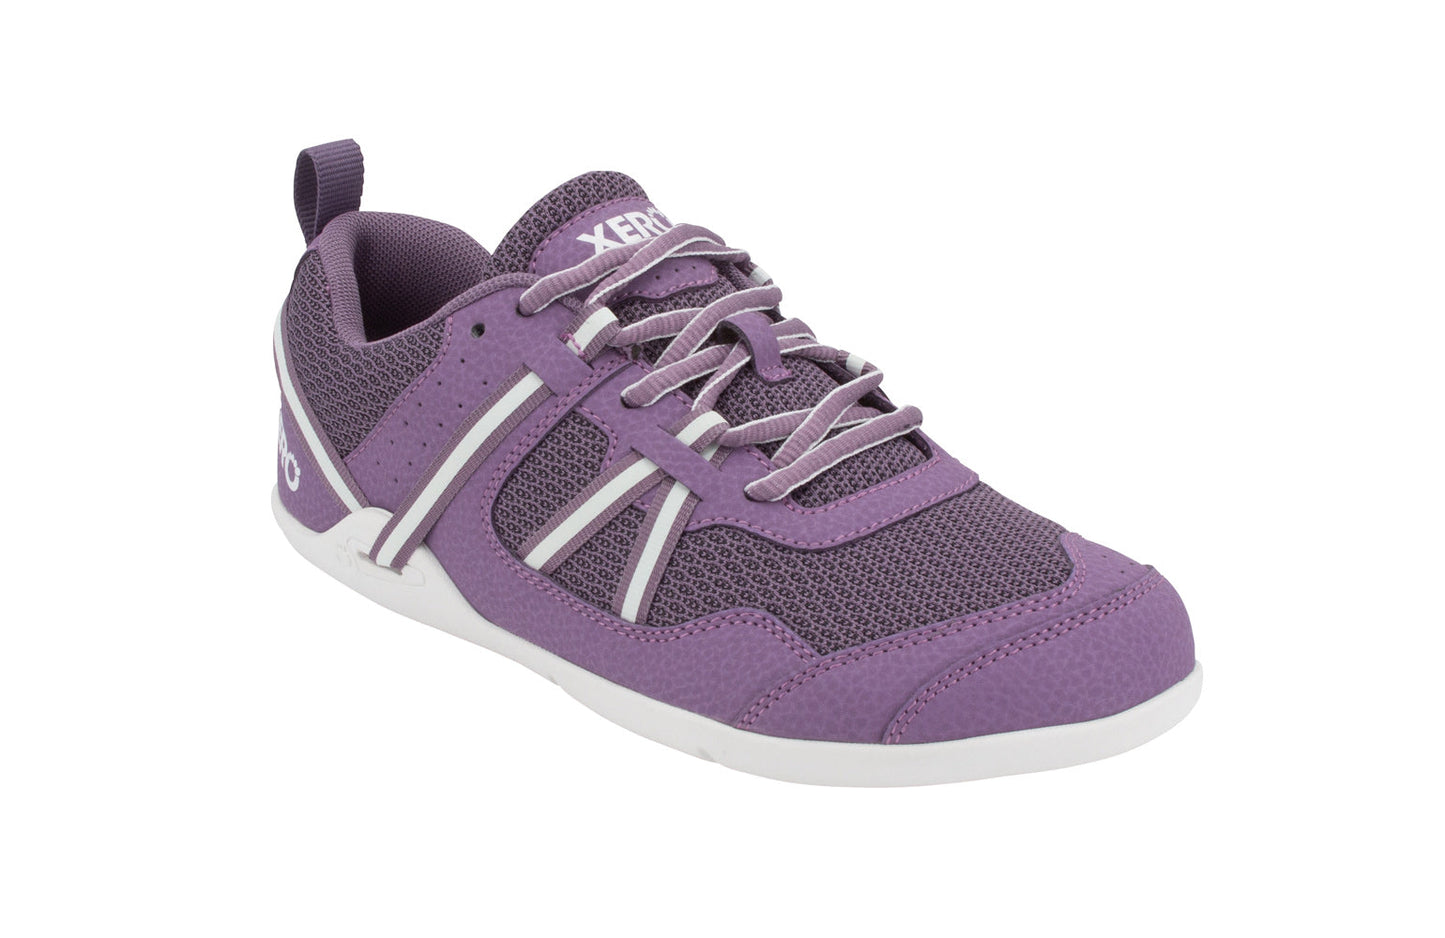 Xero Shoes Prio Kids barfods træningssko/sneakers til børn i farven violet, vinklet